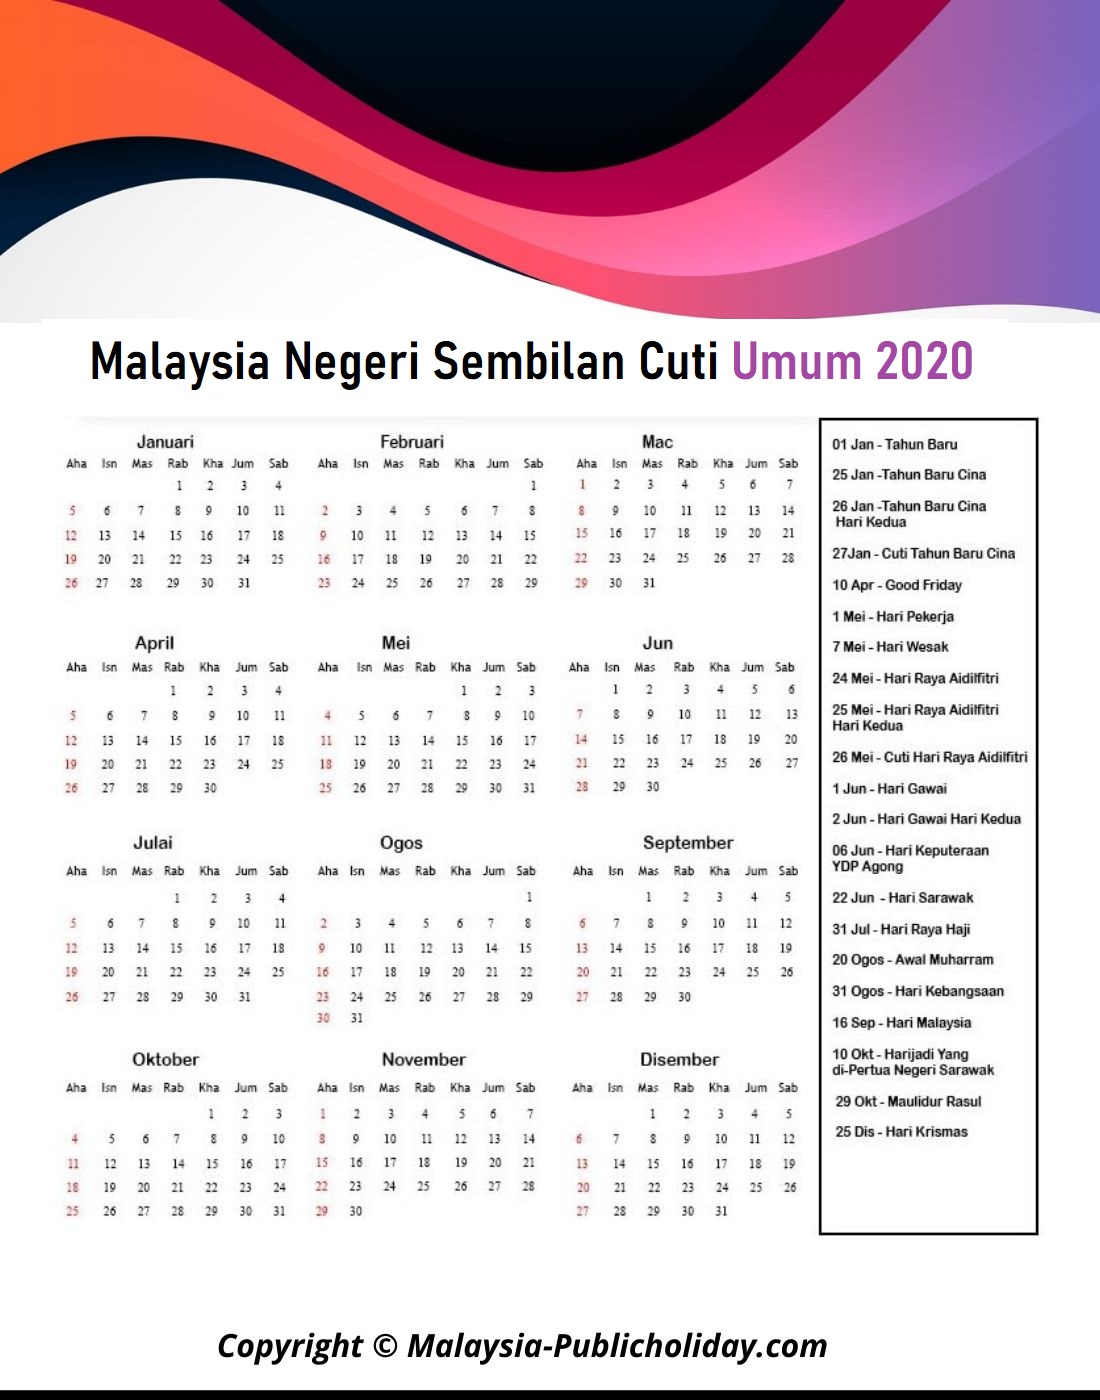 Negeri Sembilan Cuti Umum Kalendar 2020